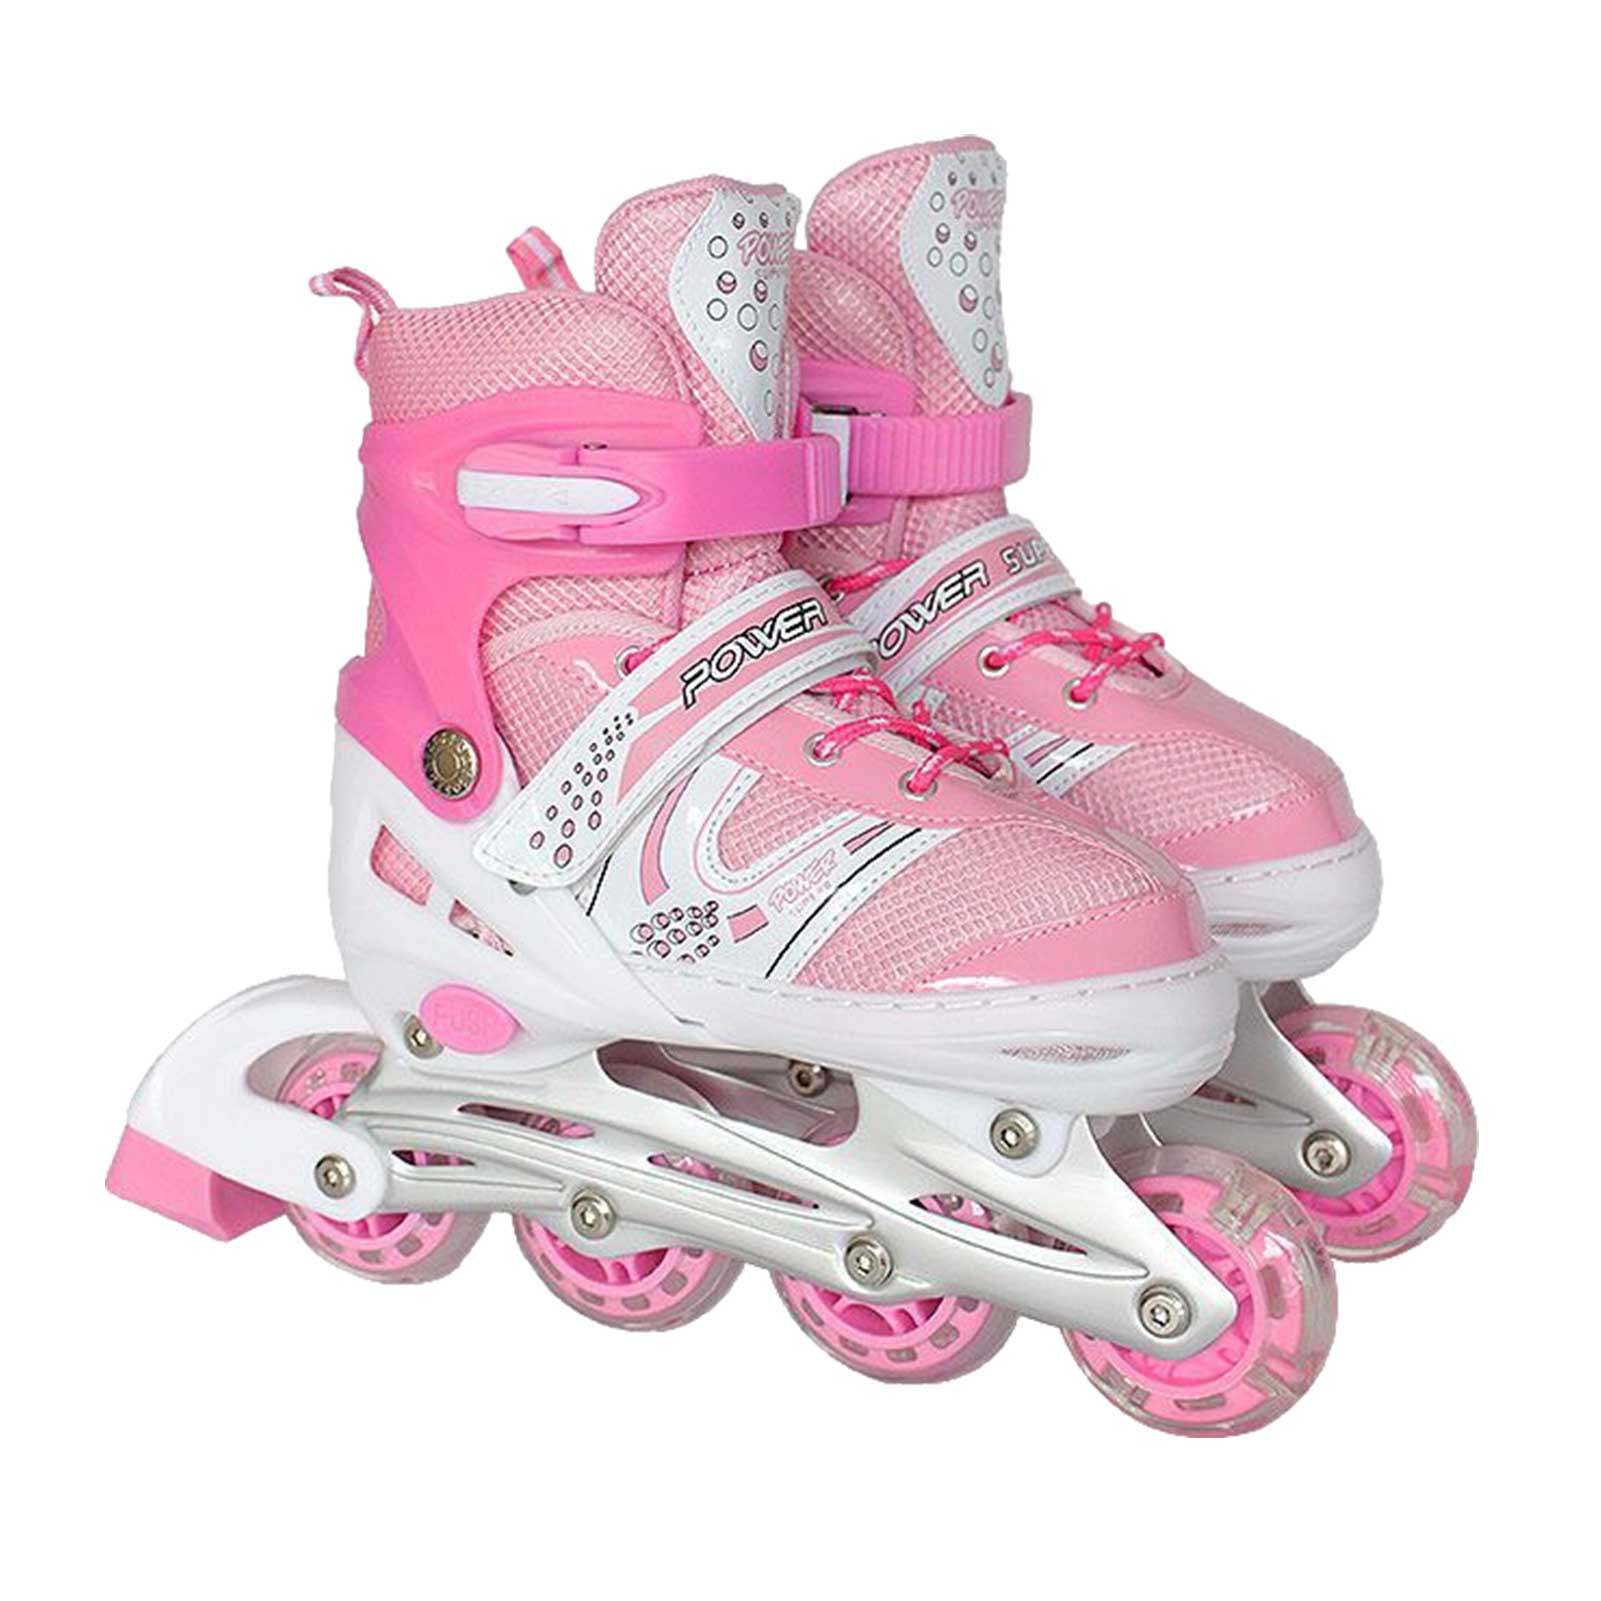 Details about   Adjustable Inline Skates Roller Blades Adult or Kid Breathable Outdoor Sport* 